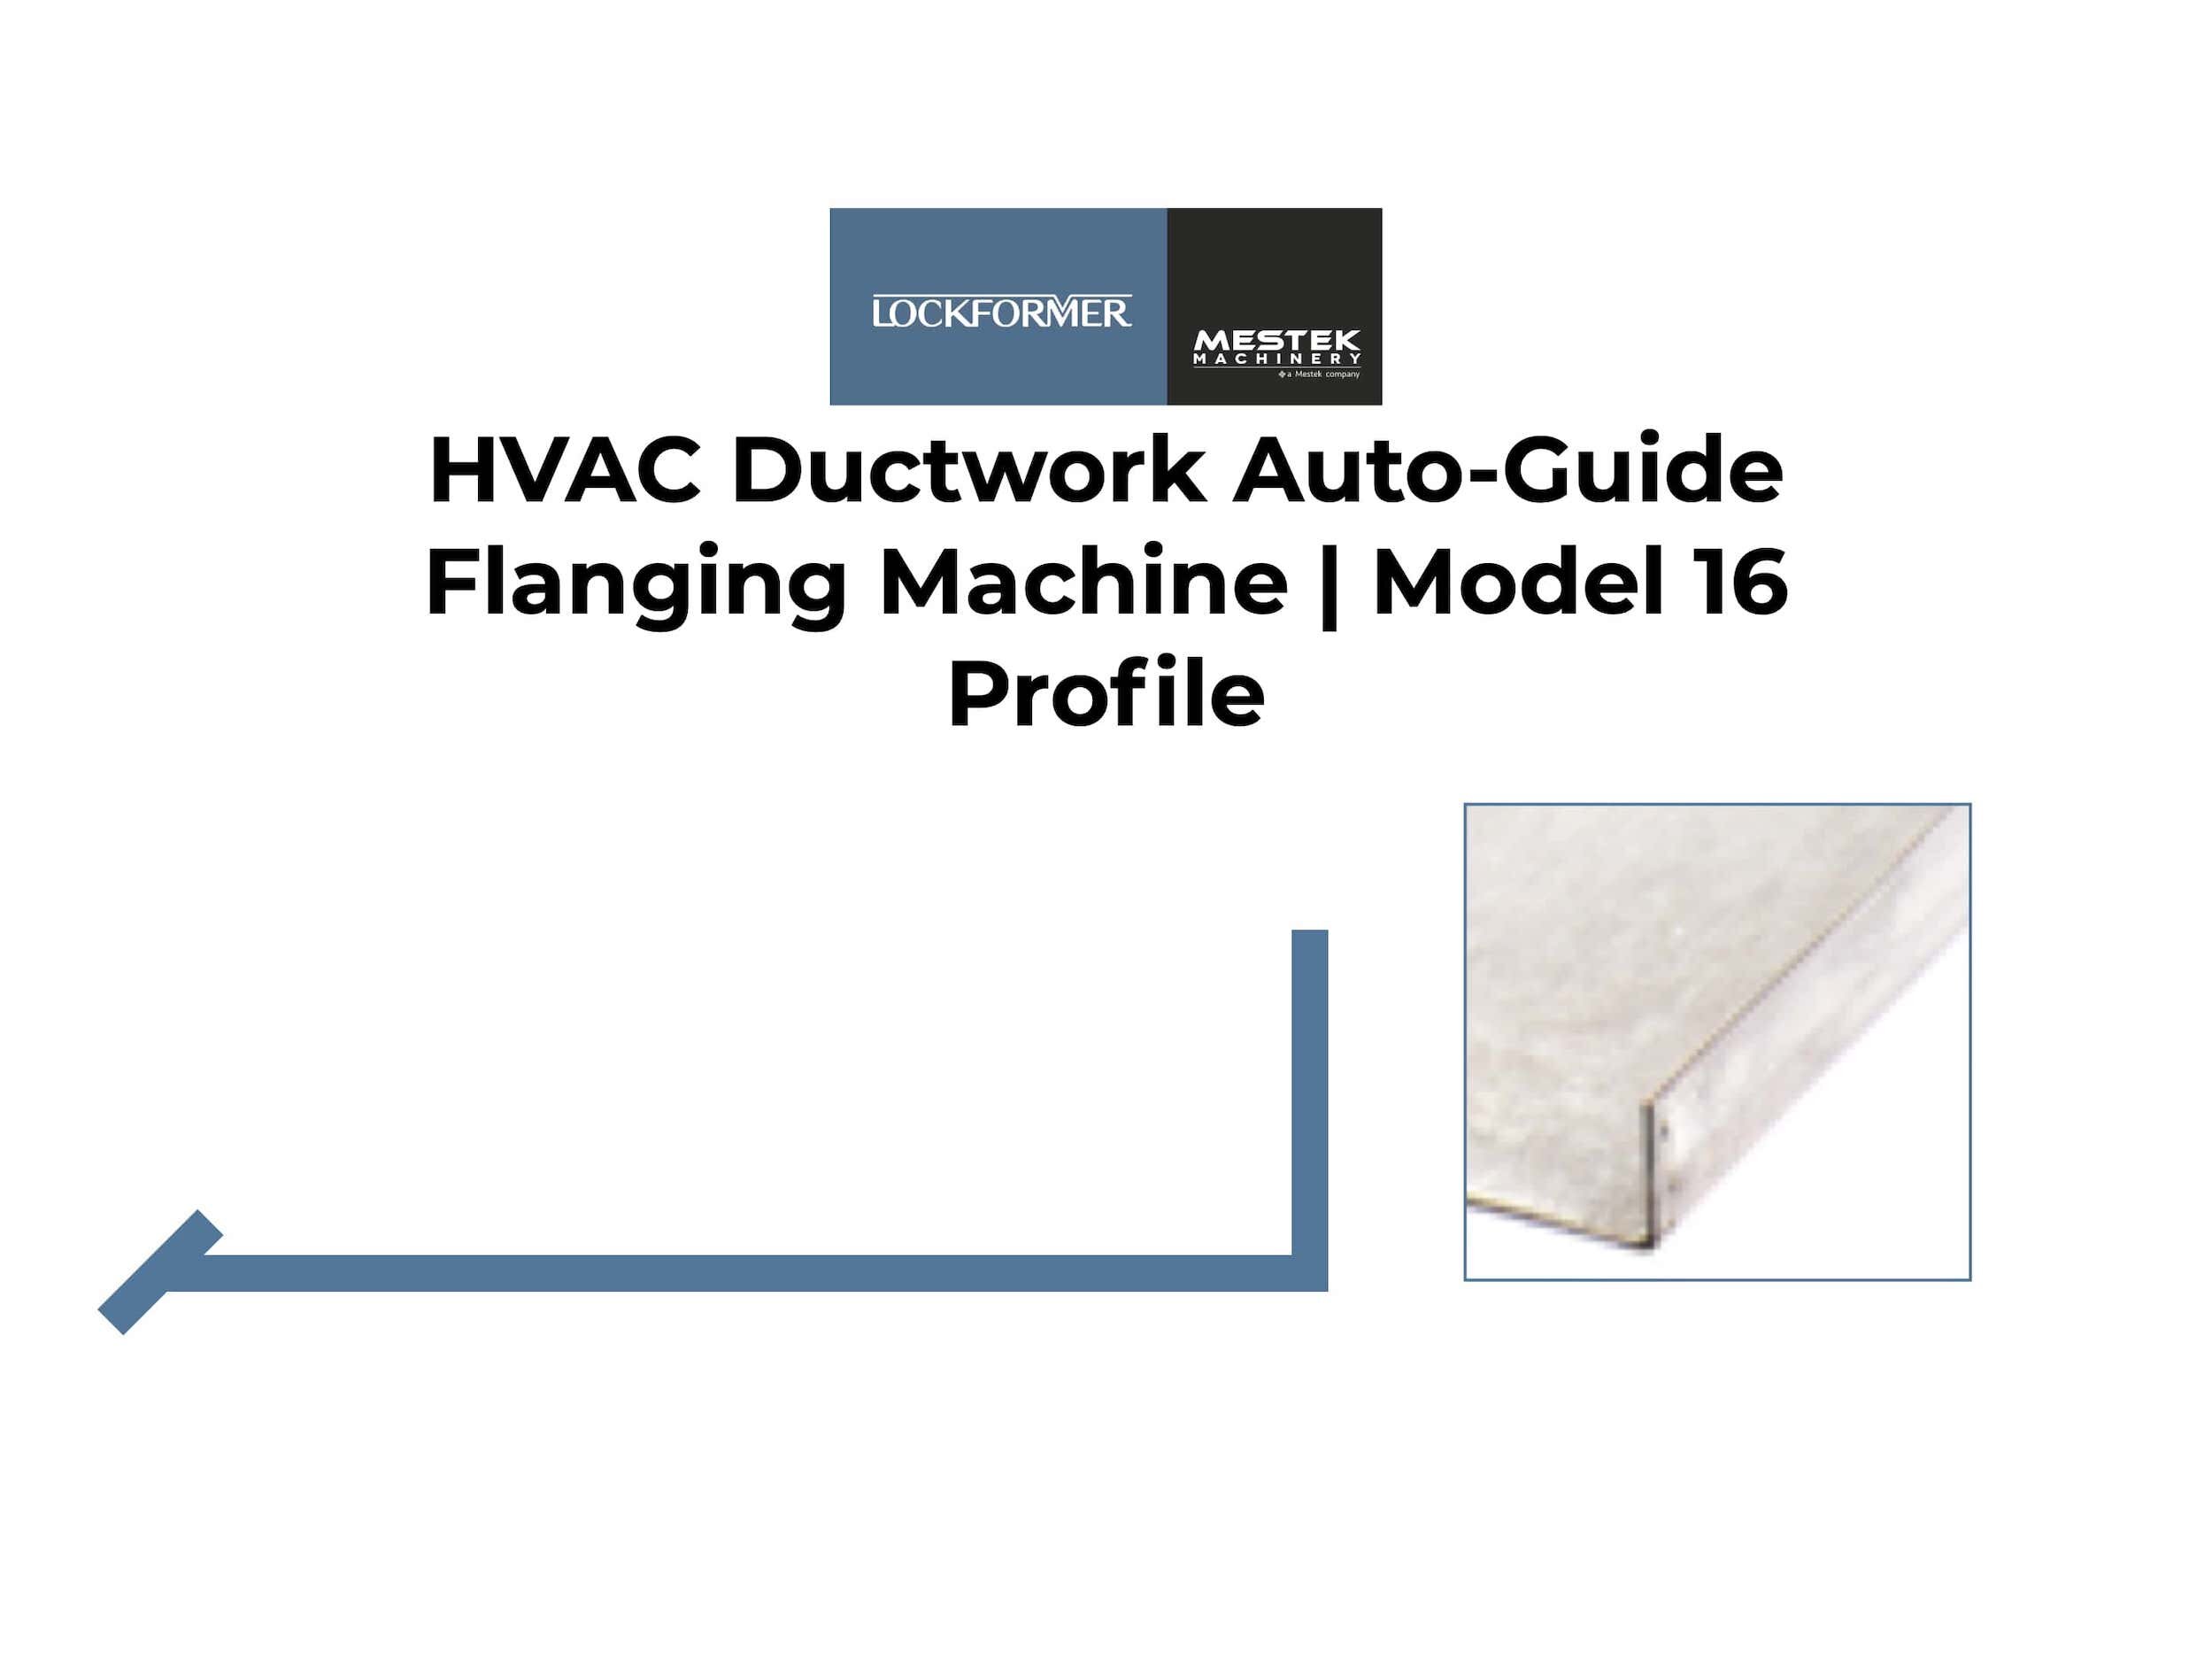 4-3-Lockformer-HVAC-Ductwork-Auto-Guide-Flanging-Machine-Model-16-v4-min.jpeg